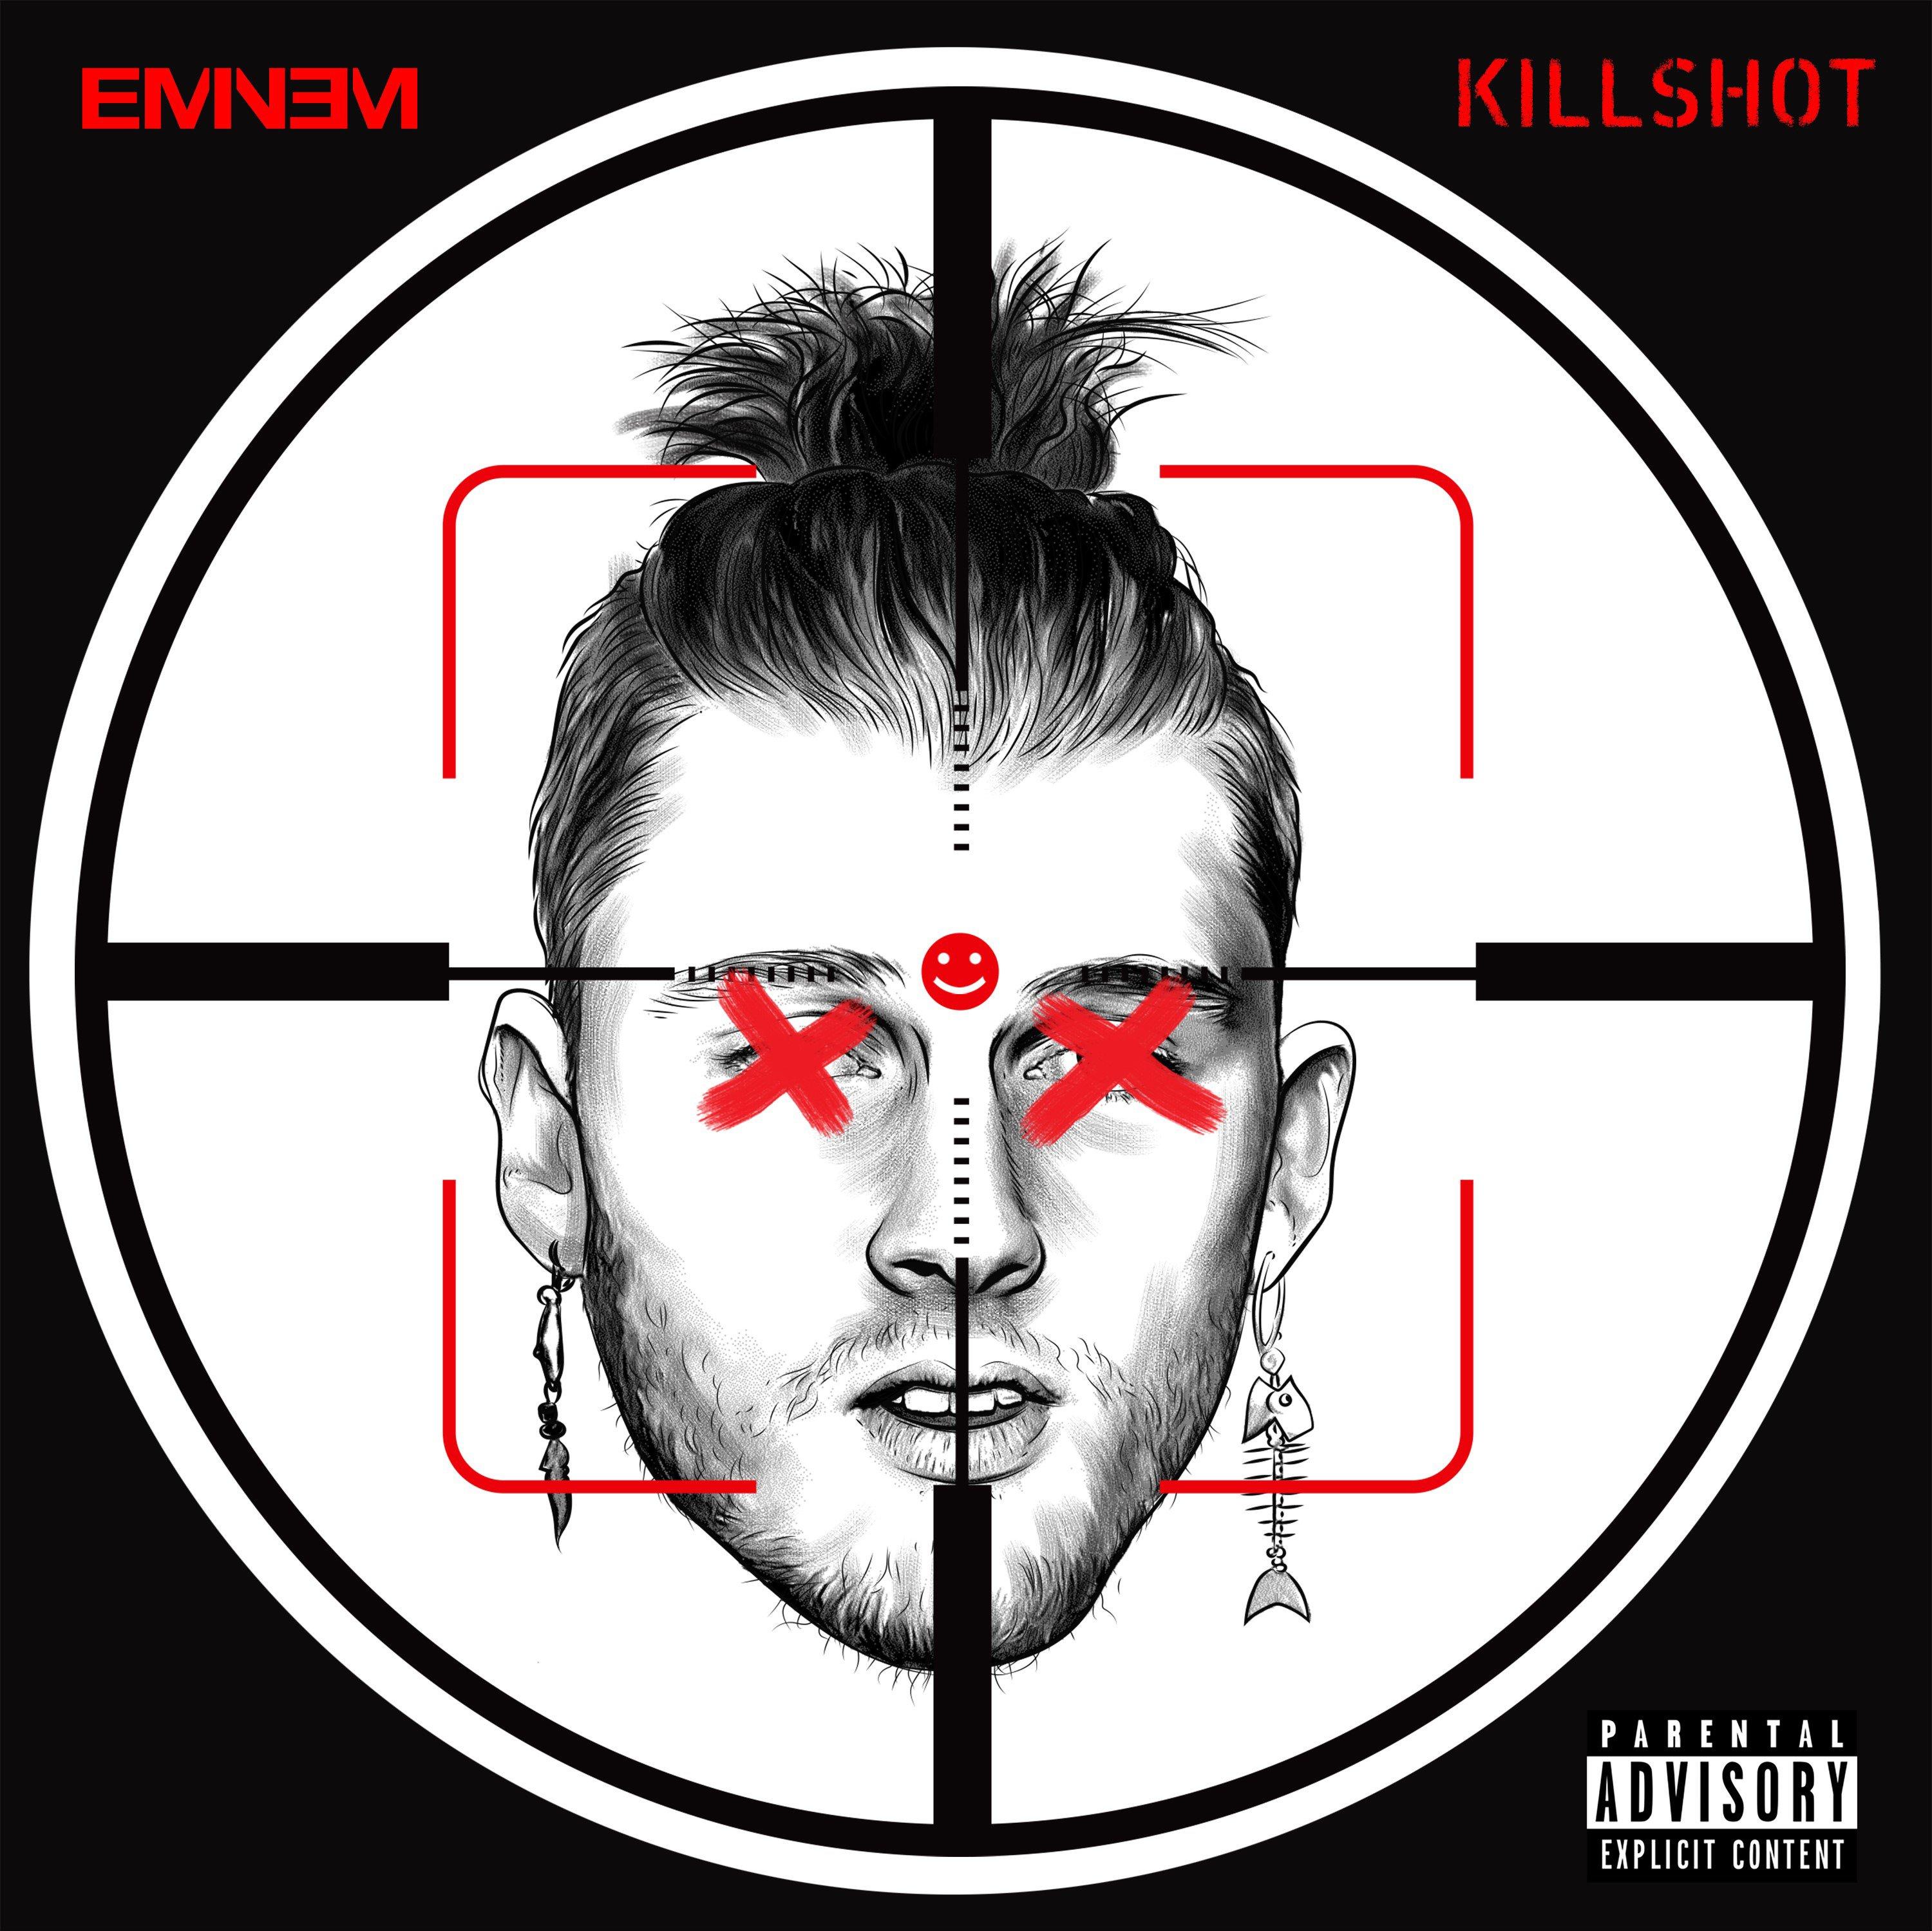 KILLSHOT Eminem Lastfm